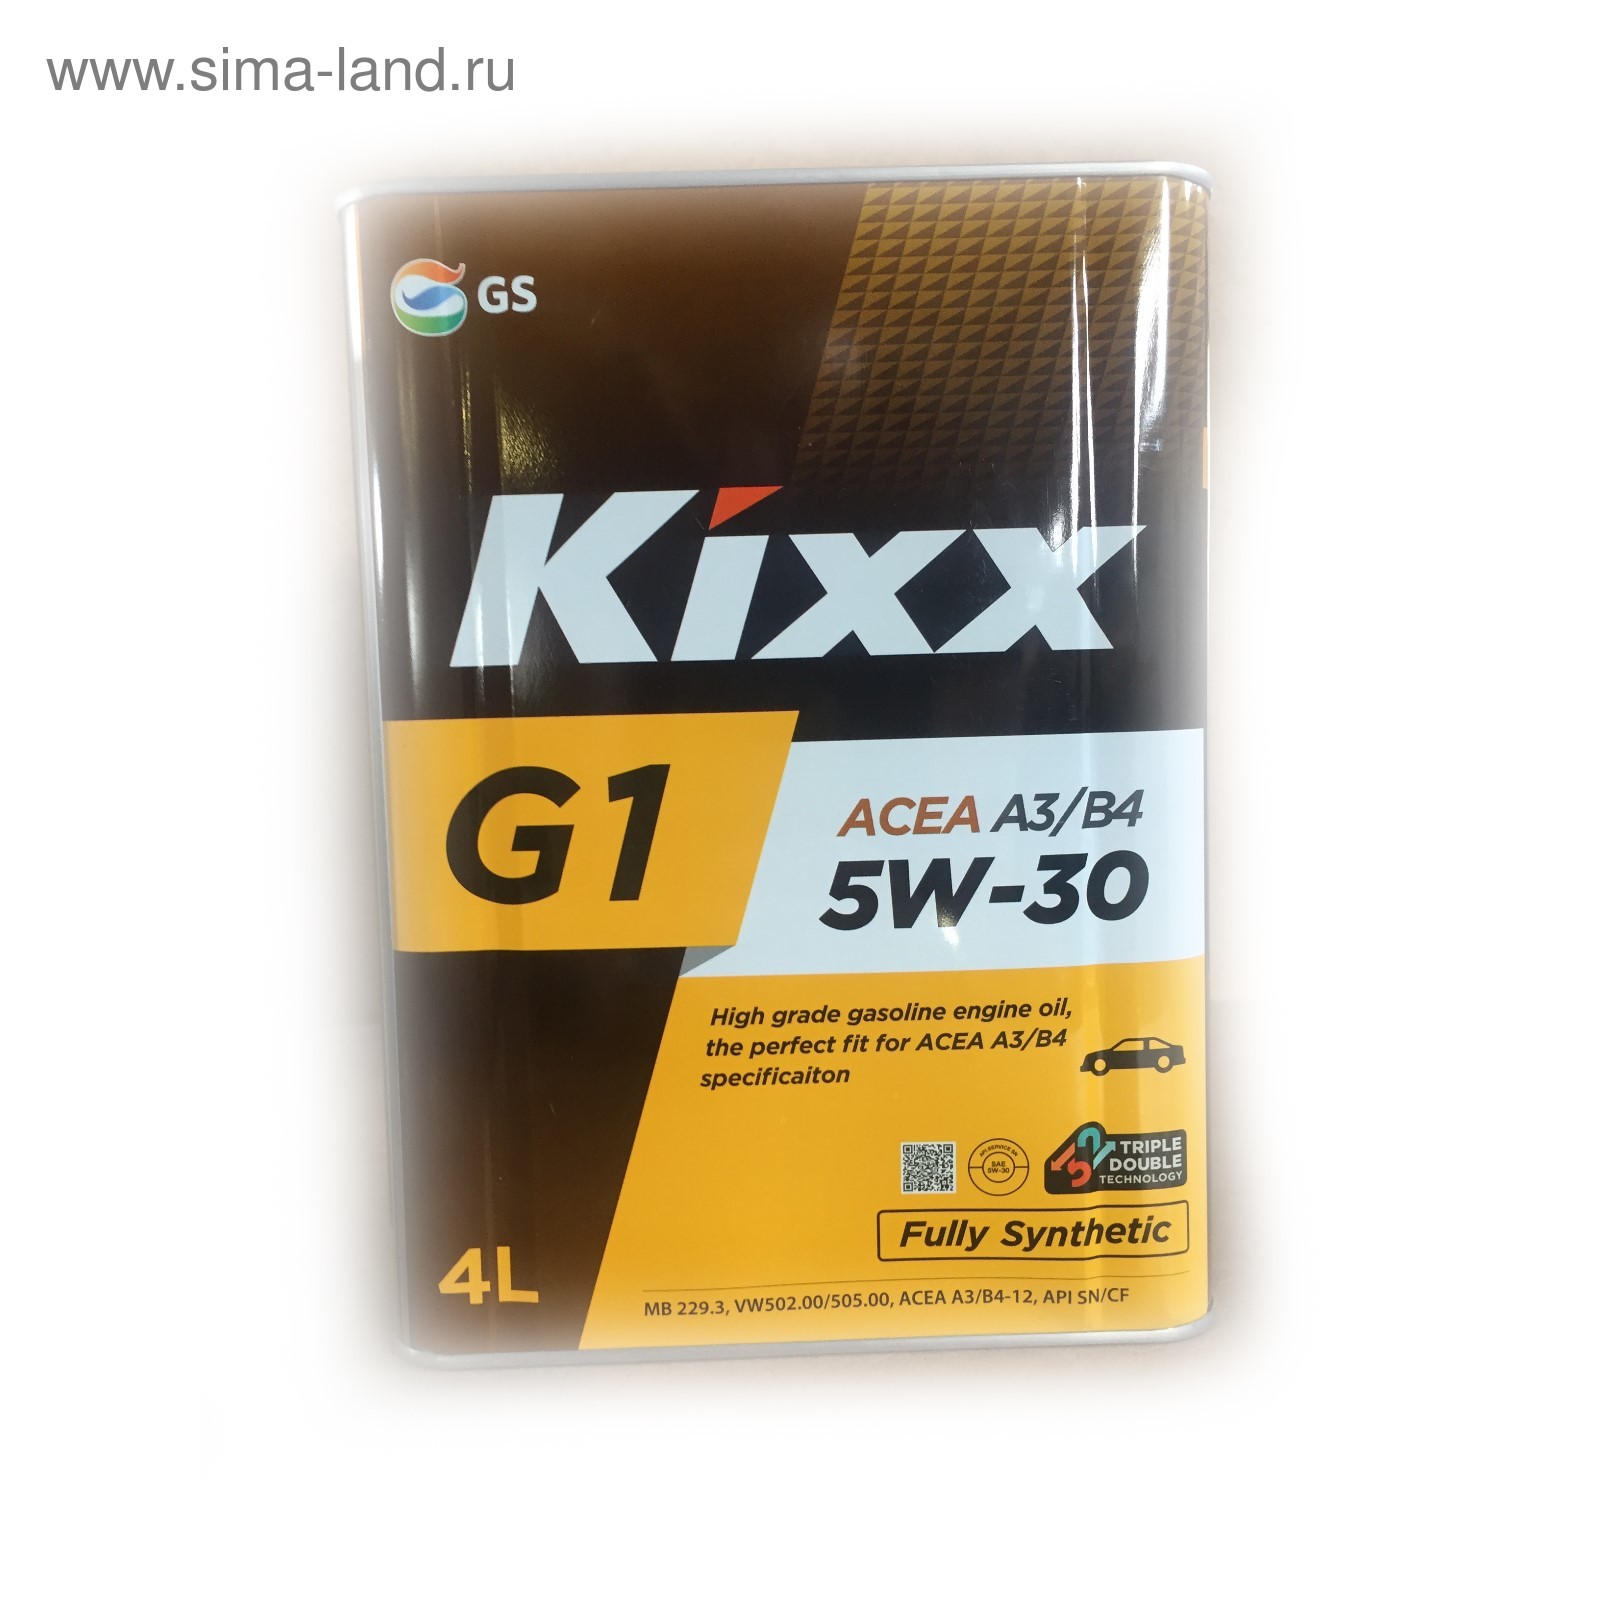 Api g1. Kixx g 5w30. Kixx Kixx g1 10w-40 SN 4 Л. Масло Kixx g1 5w30 4л a3/b4. Kixx Kixx g1 5w-30 SN Plus 4 л.